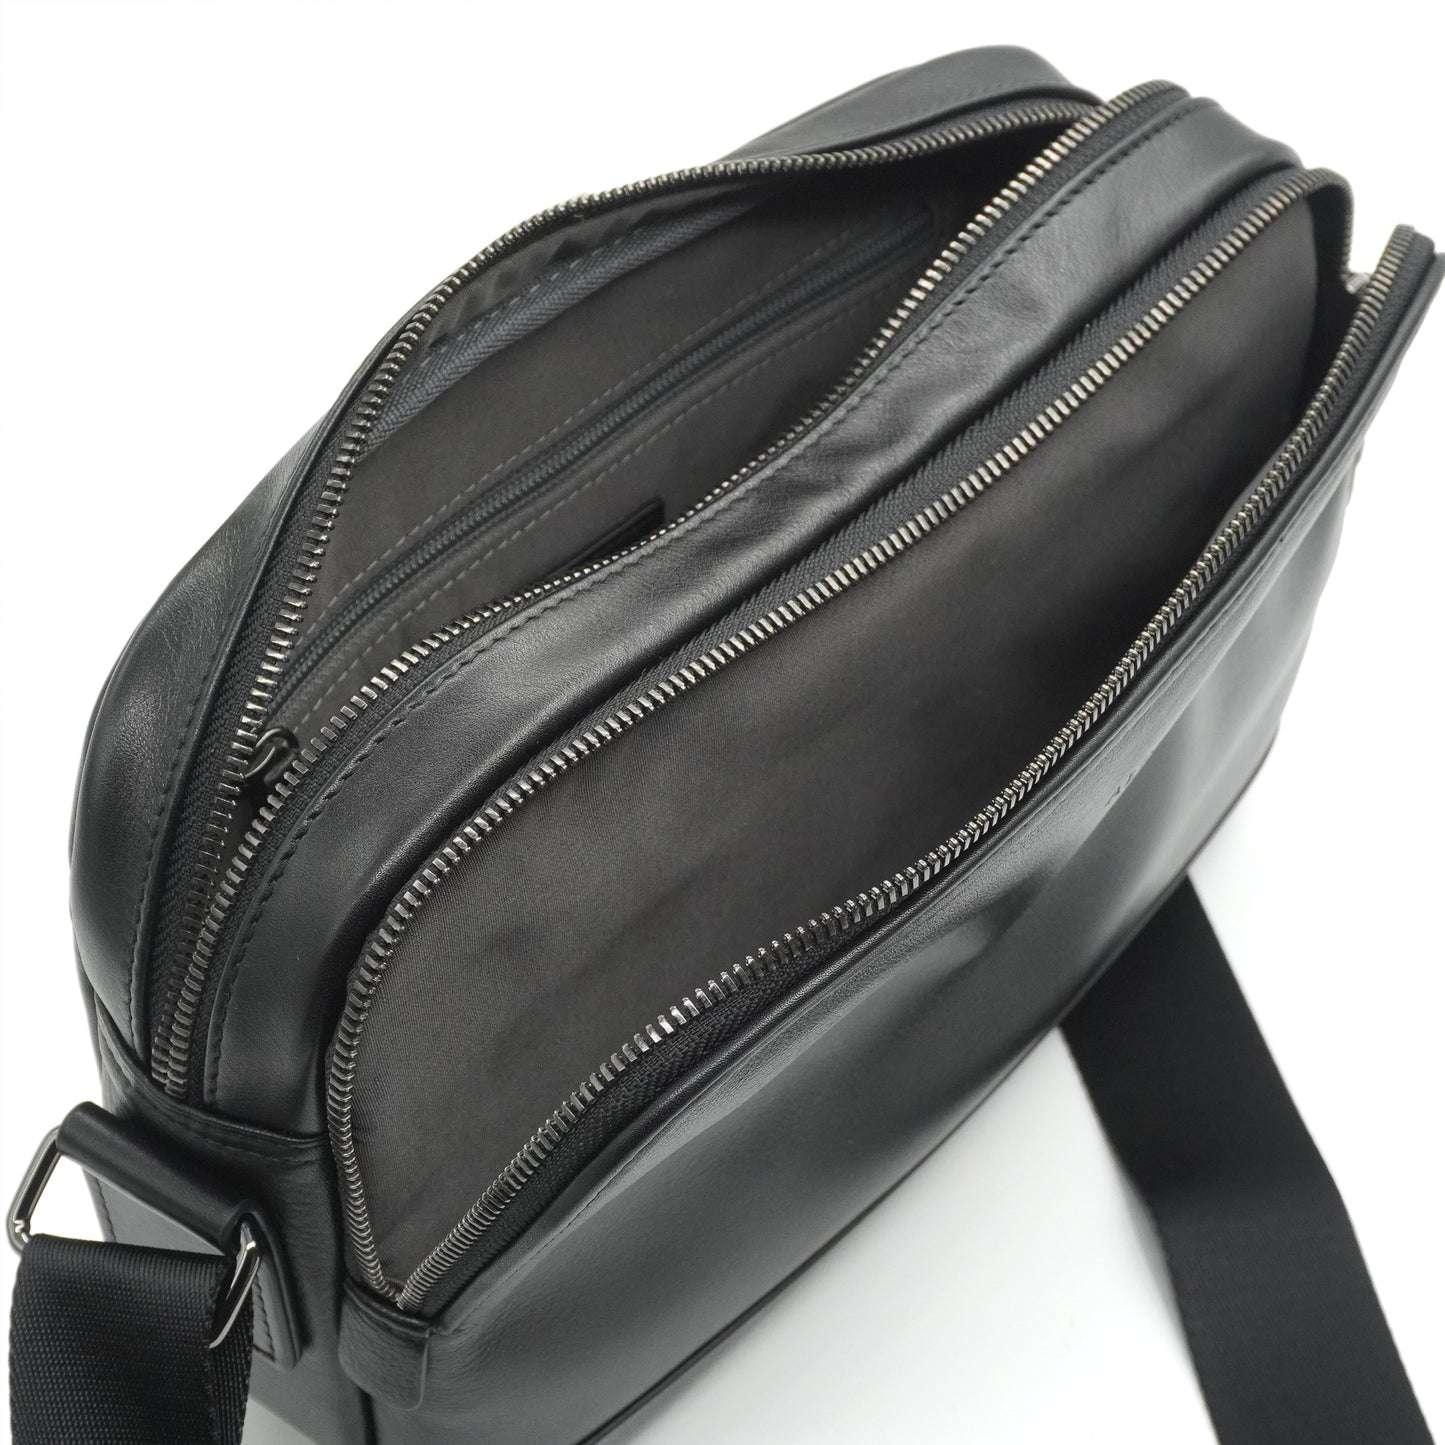 Alef Ridley Men's  Leather Shoulder Bag (Black)